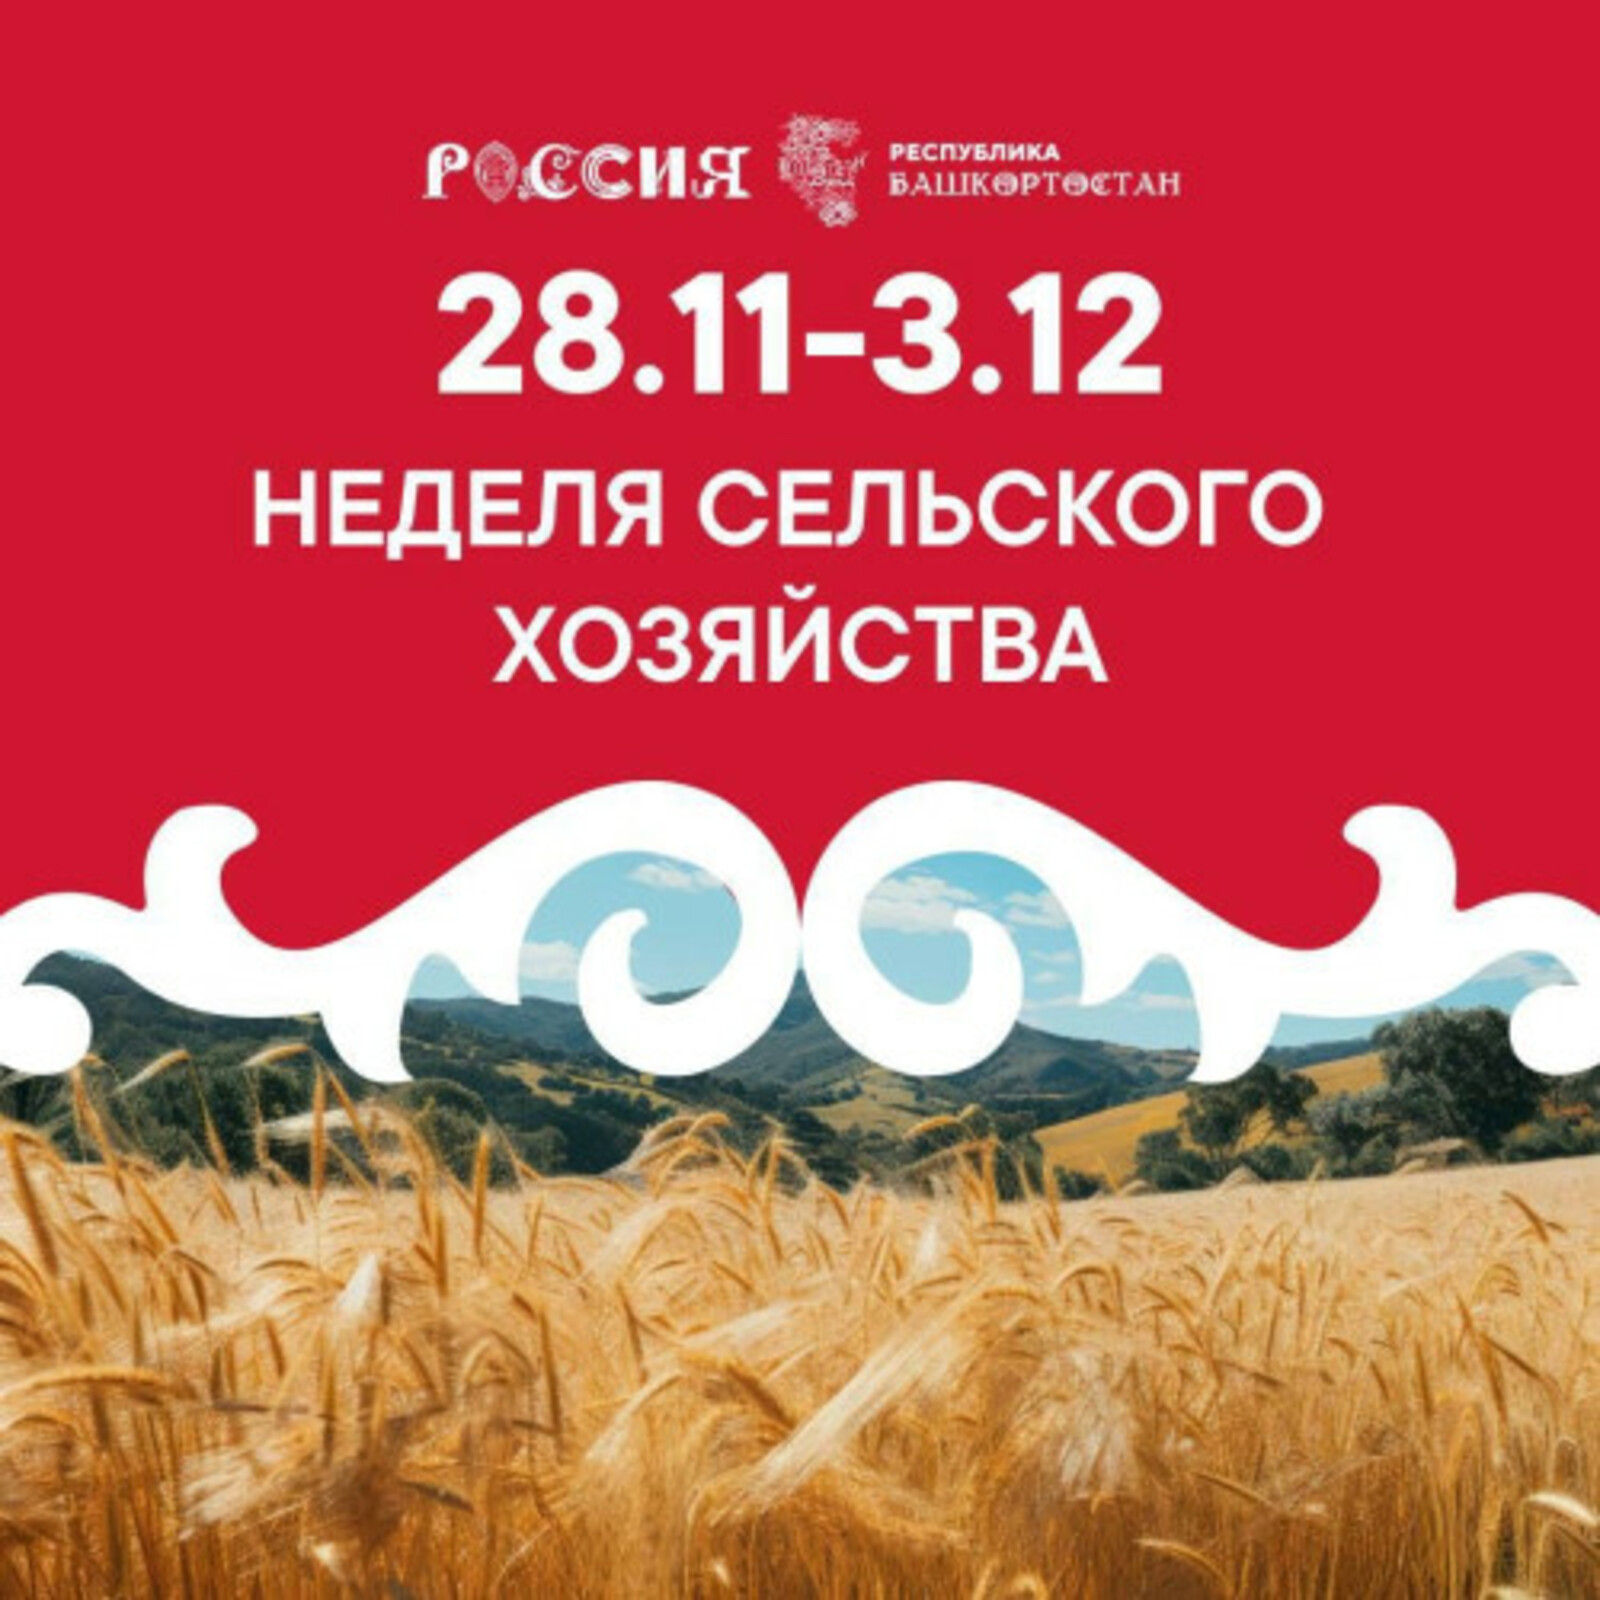 На стенде Башкортостана в рамках Международной выставки-форума «Россия» пройдет неделя сельского хозяйства